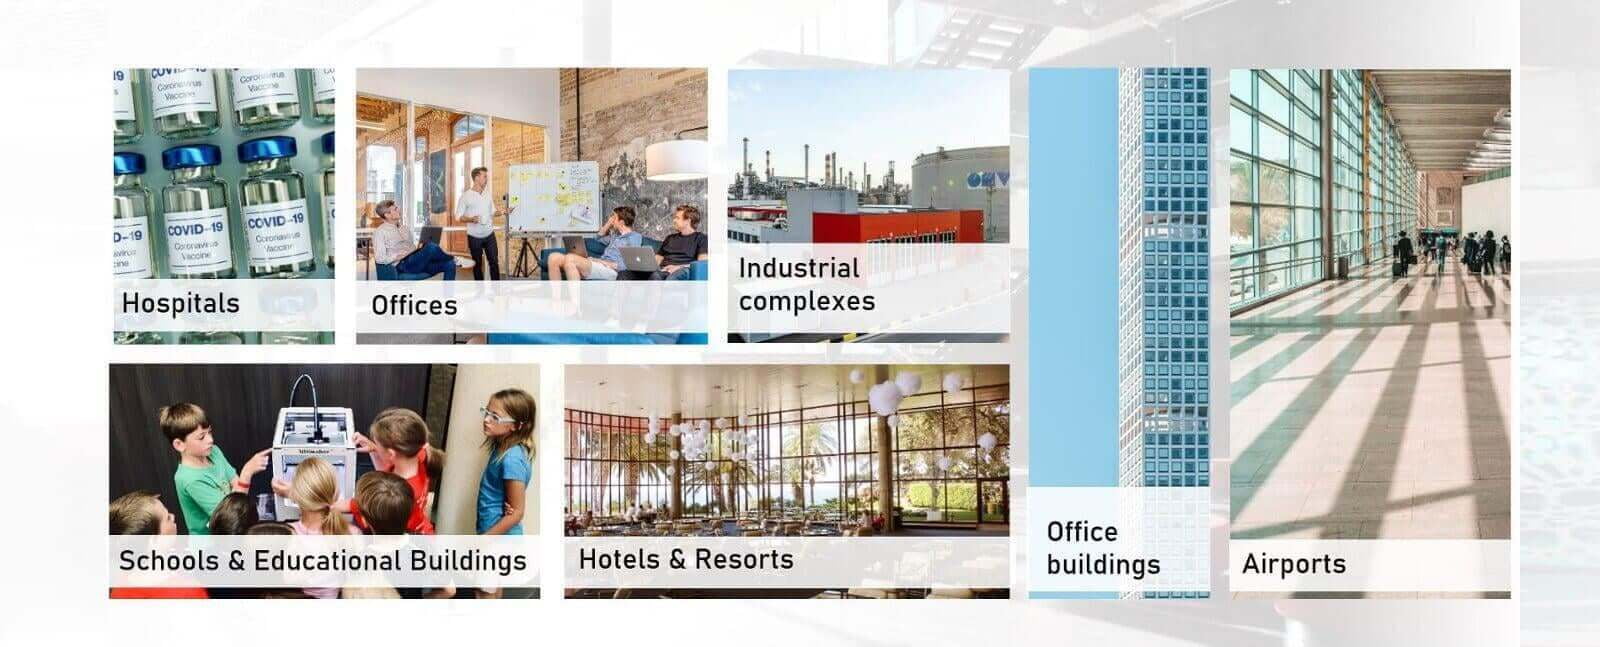 智能建筑解决方案适用于医院、办公室、工业综合体和工厂、学校、酒店和机场。